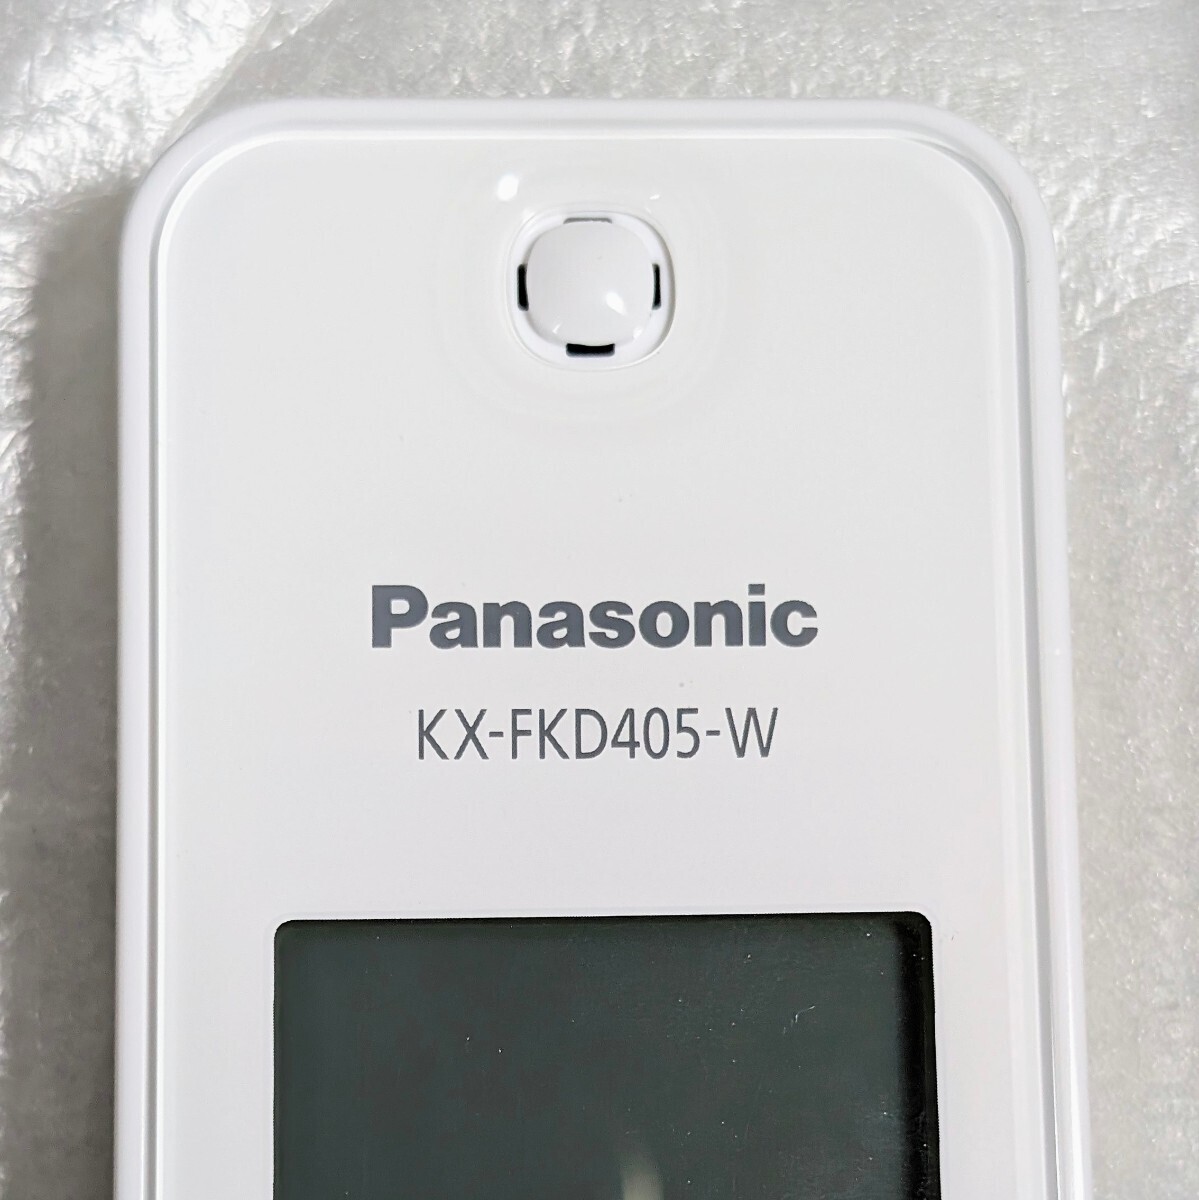 未使用保管品 Panasonic VE-GD27DL-W/VE-GD27/KX-FKD405-W/PNLC1058 パナソニック コードレス電話機 RU.RU.RU ルルル 箱 説明書付 現状品